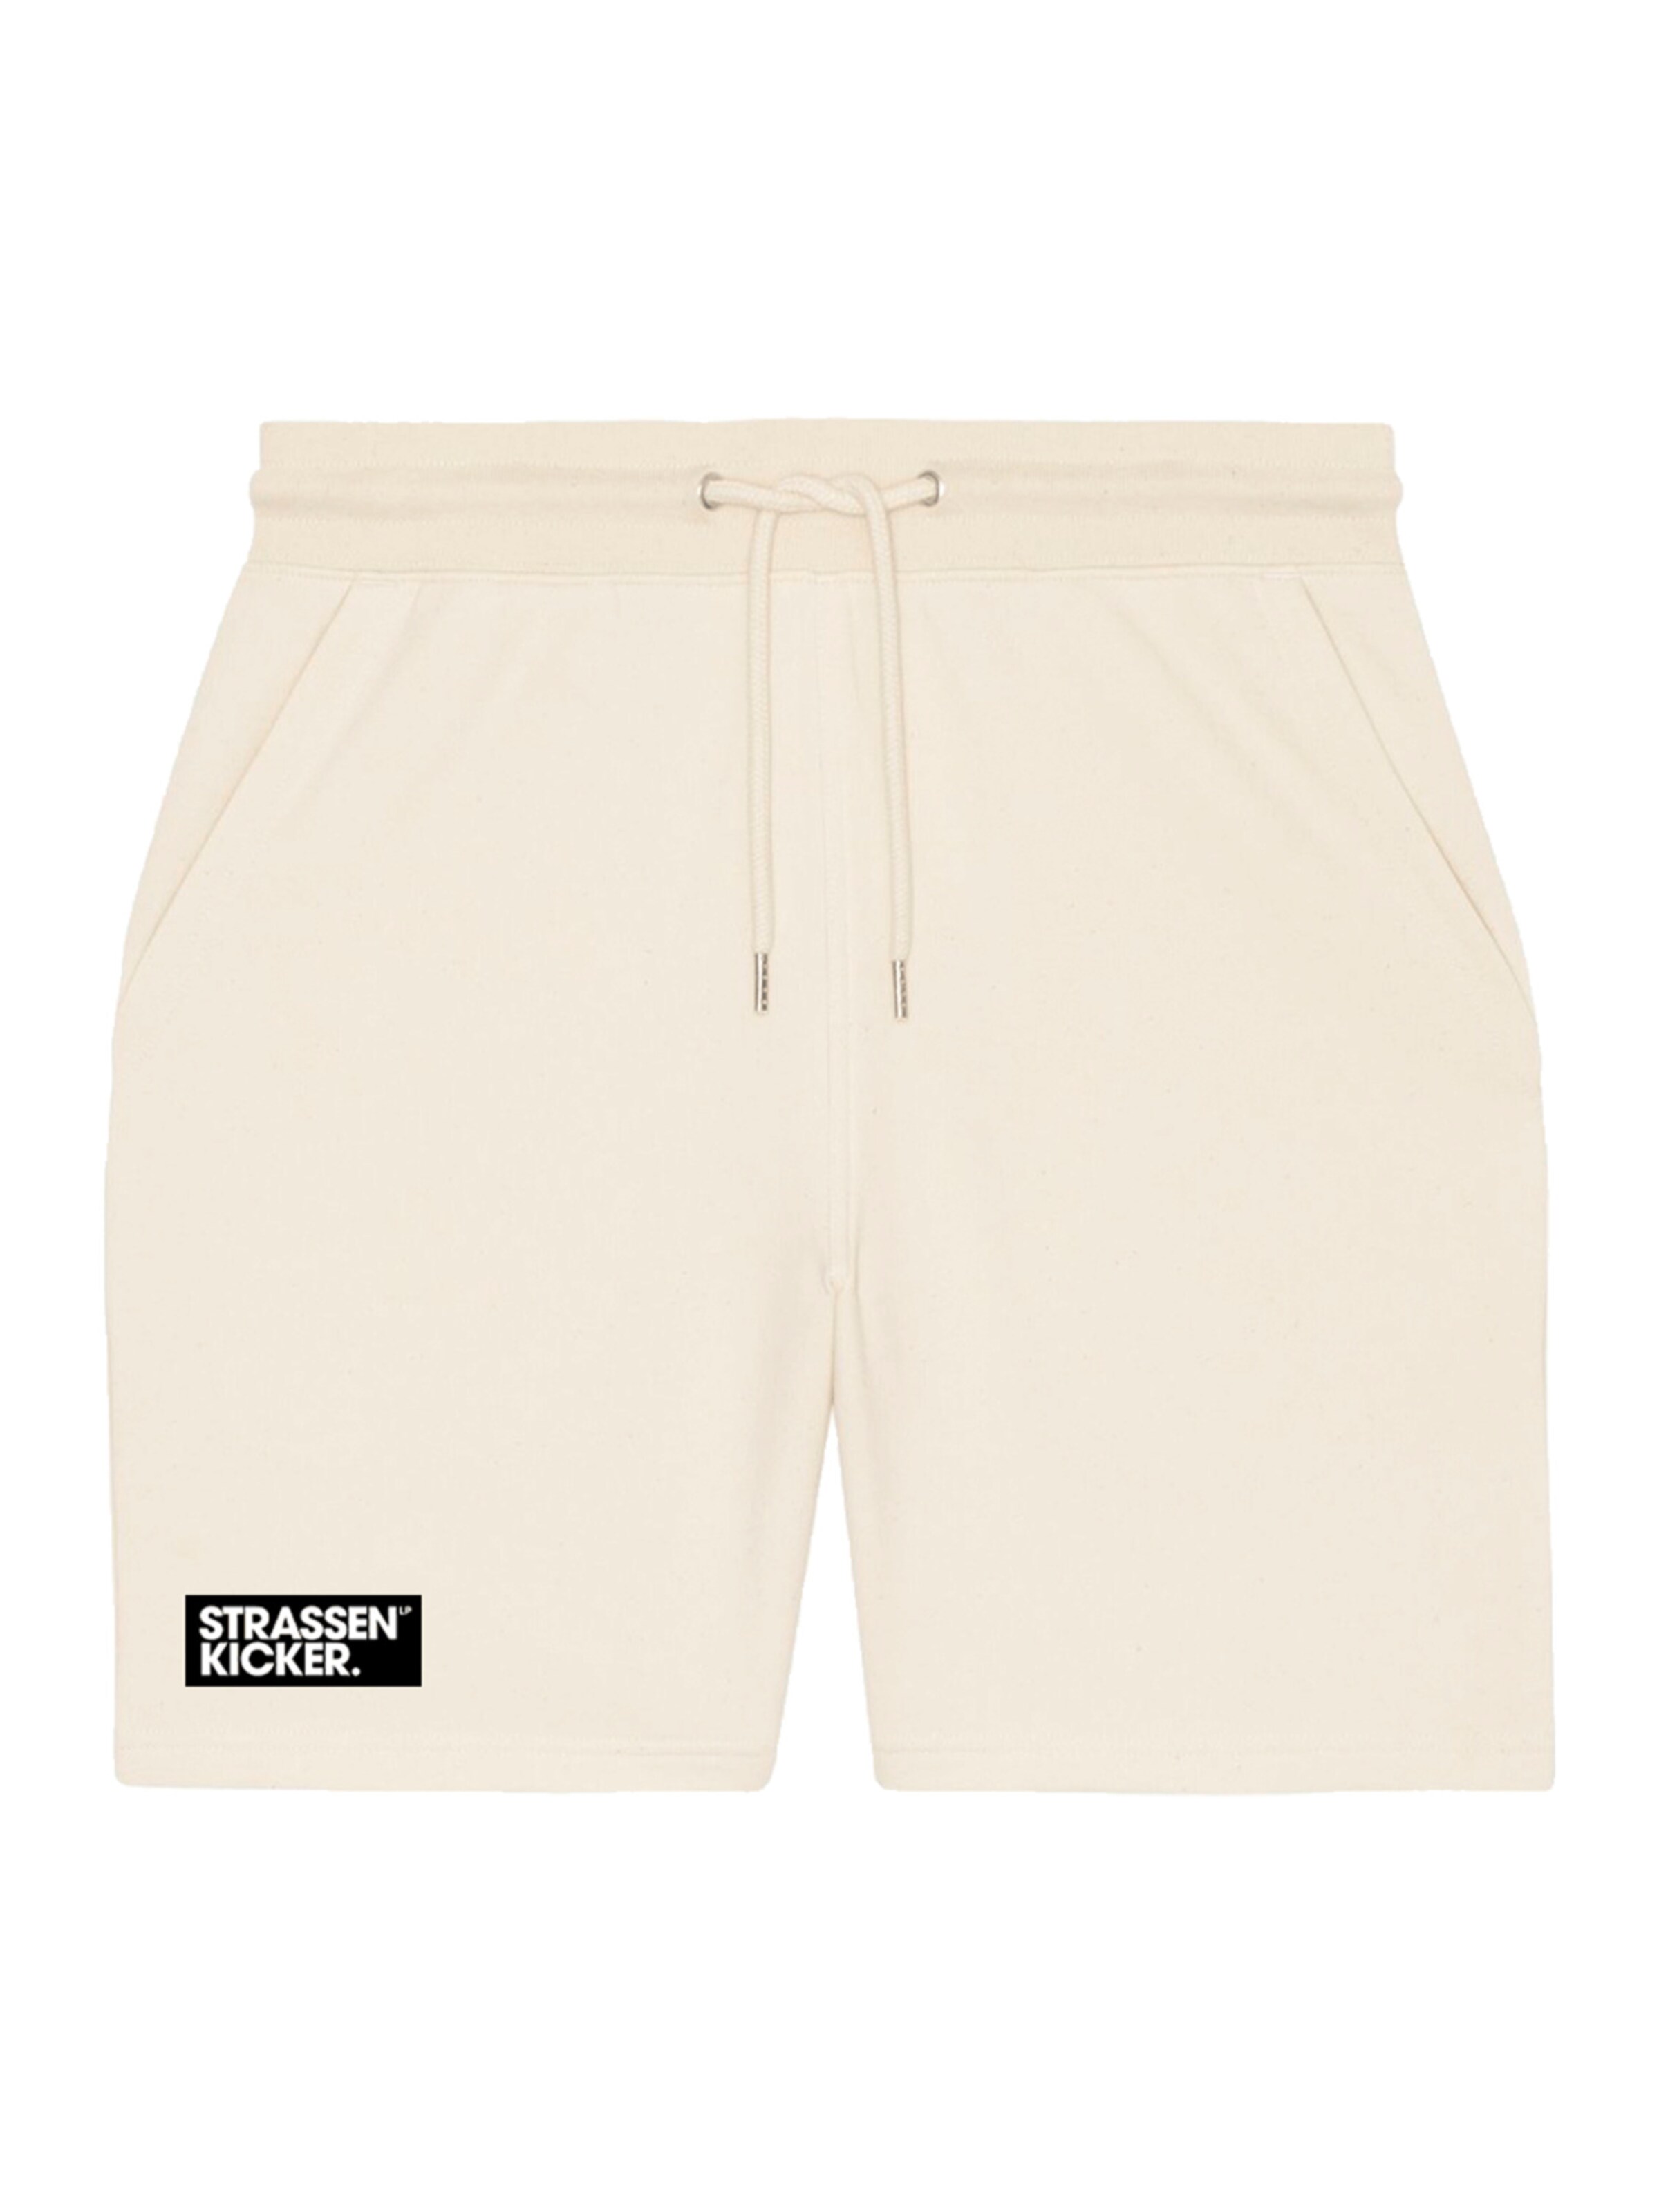 Männer Hosen STRASSENKICKER Shorts in Creme - SI90169